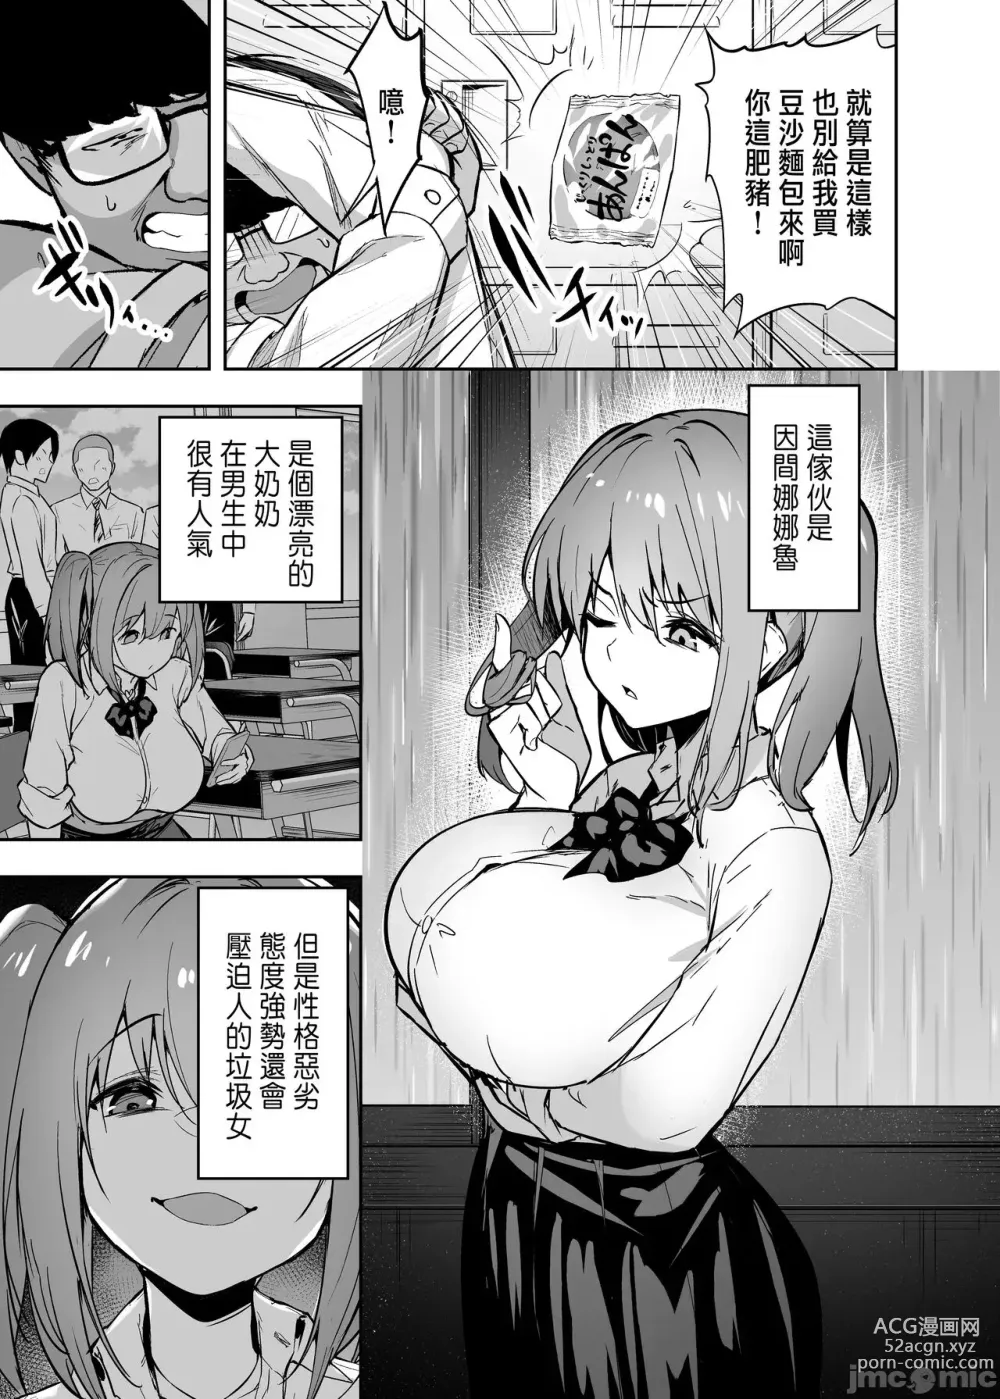 Page 6 of manga 把囂張狂妄的辣妹變成魅魔來懲罰1+1.5+2